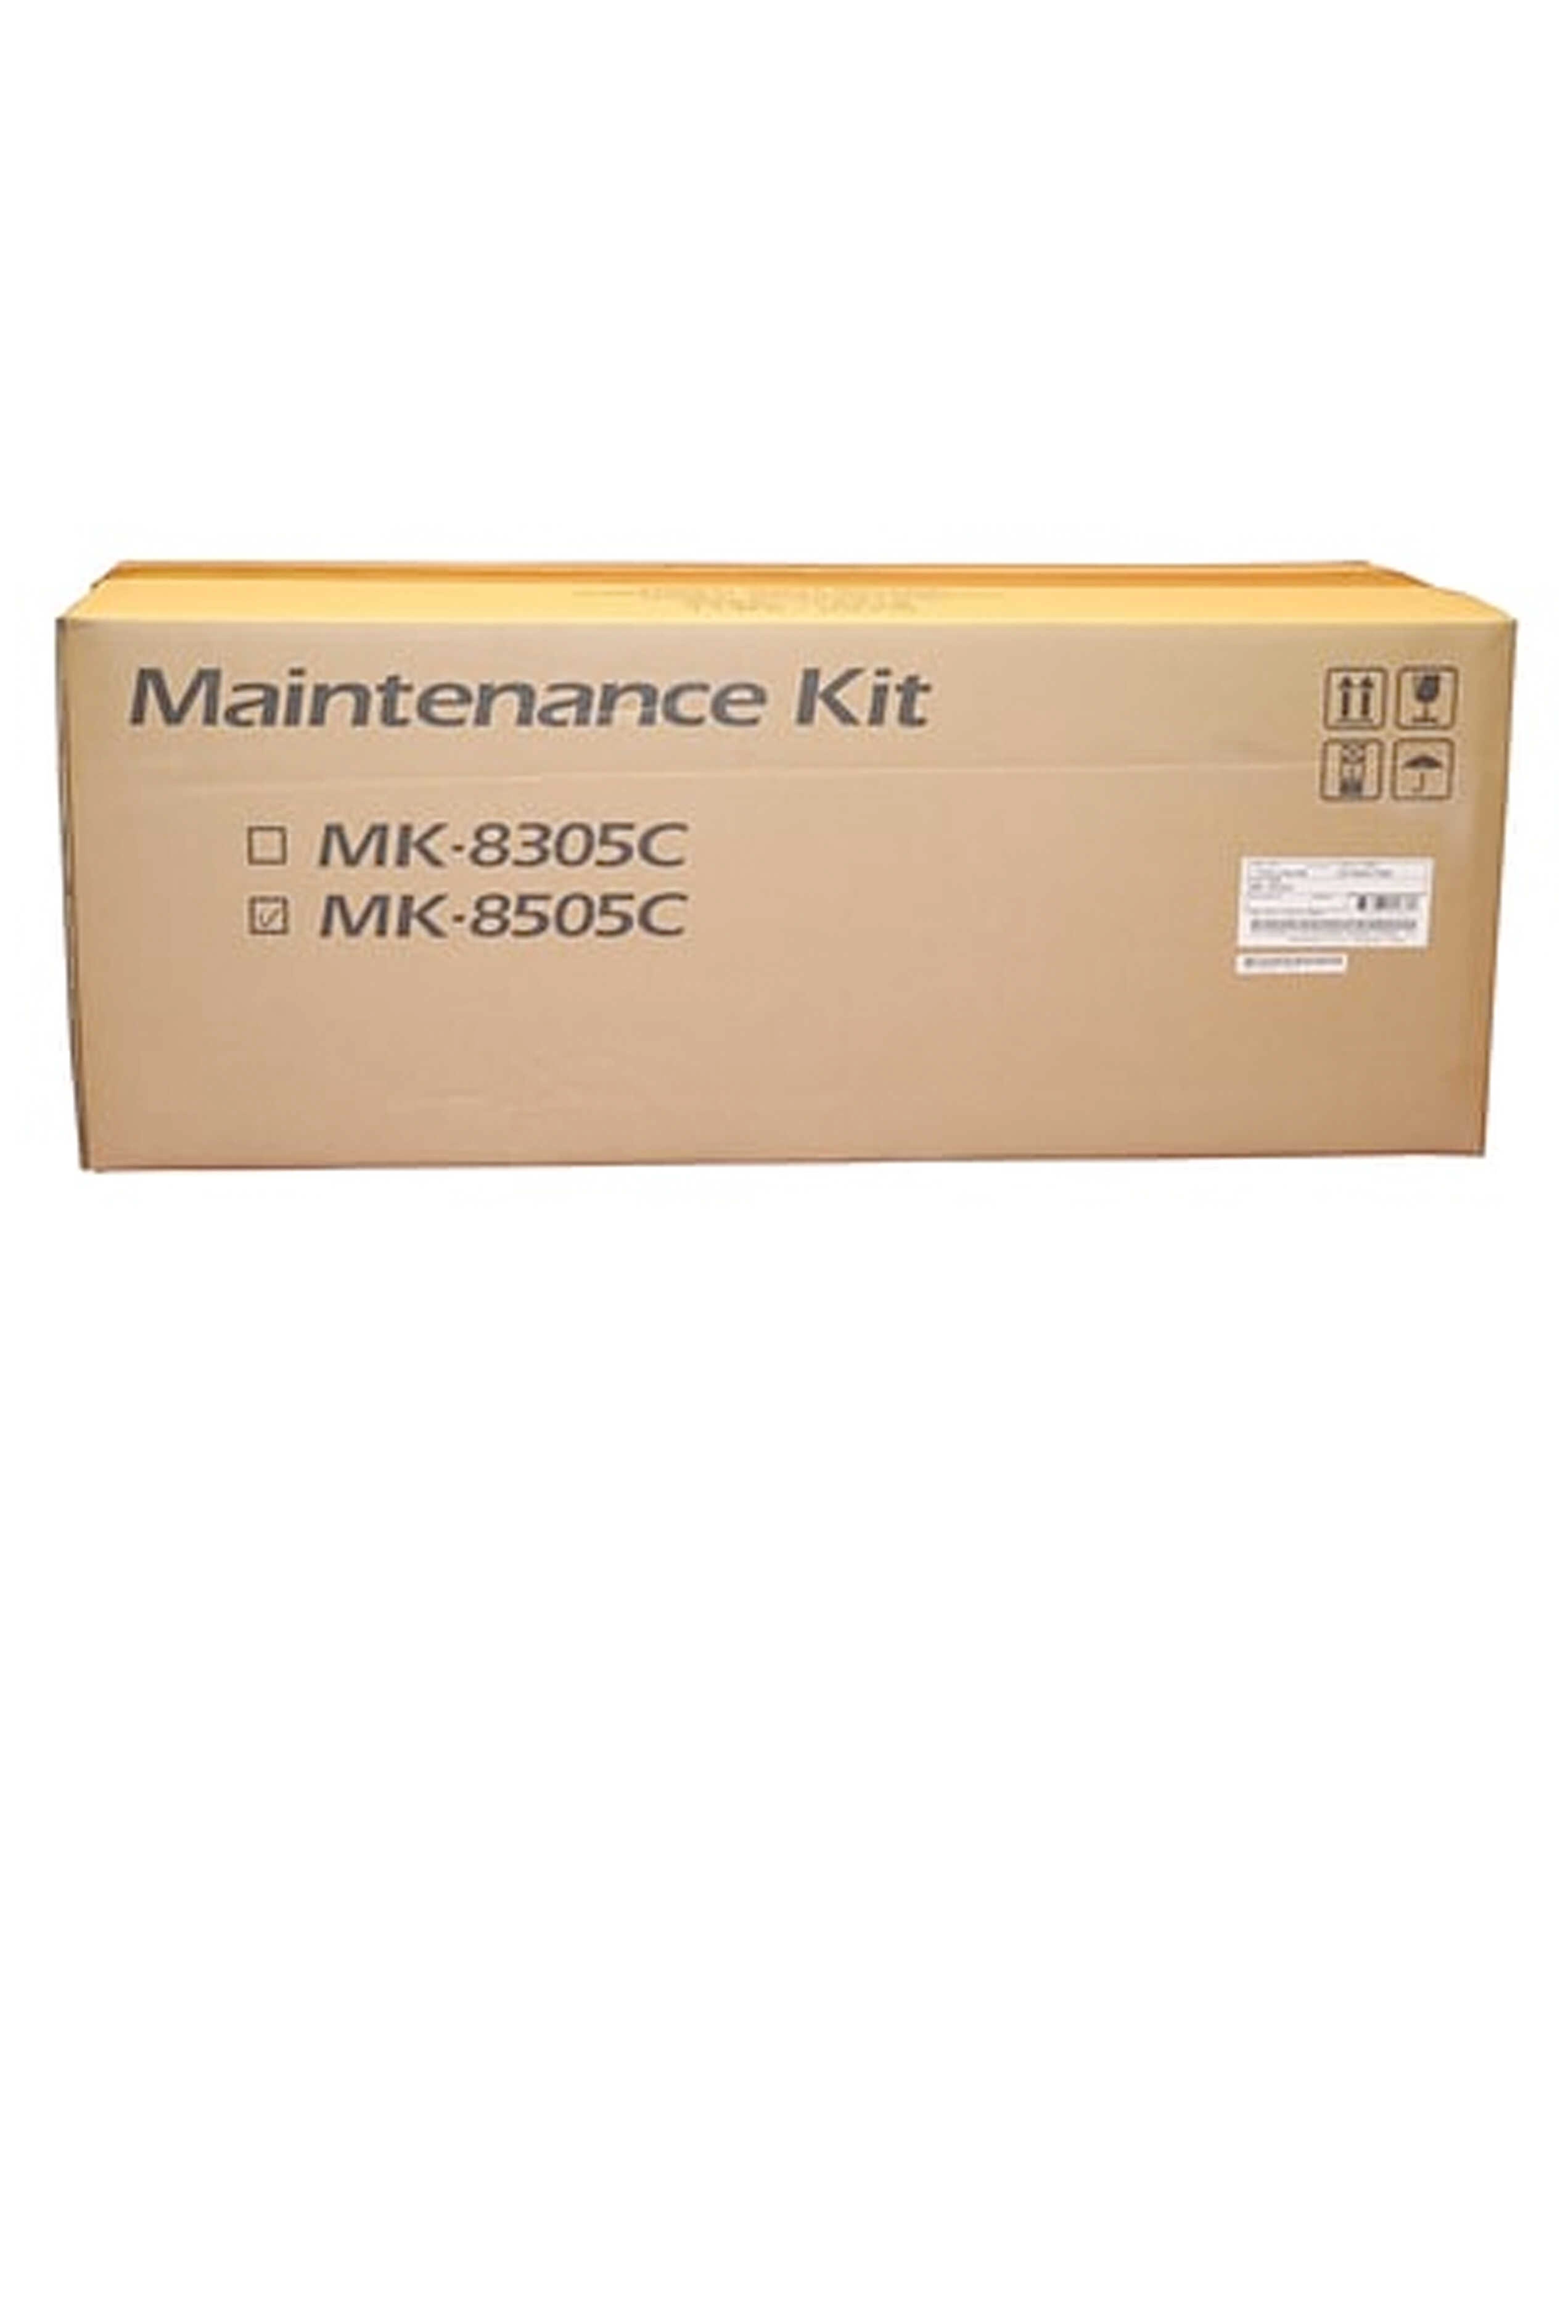 MK-8505C, 1702LC0UN2